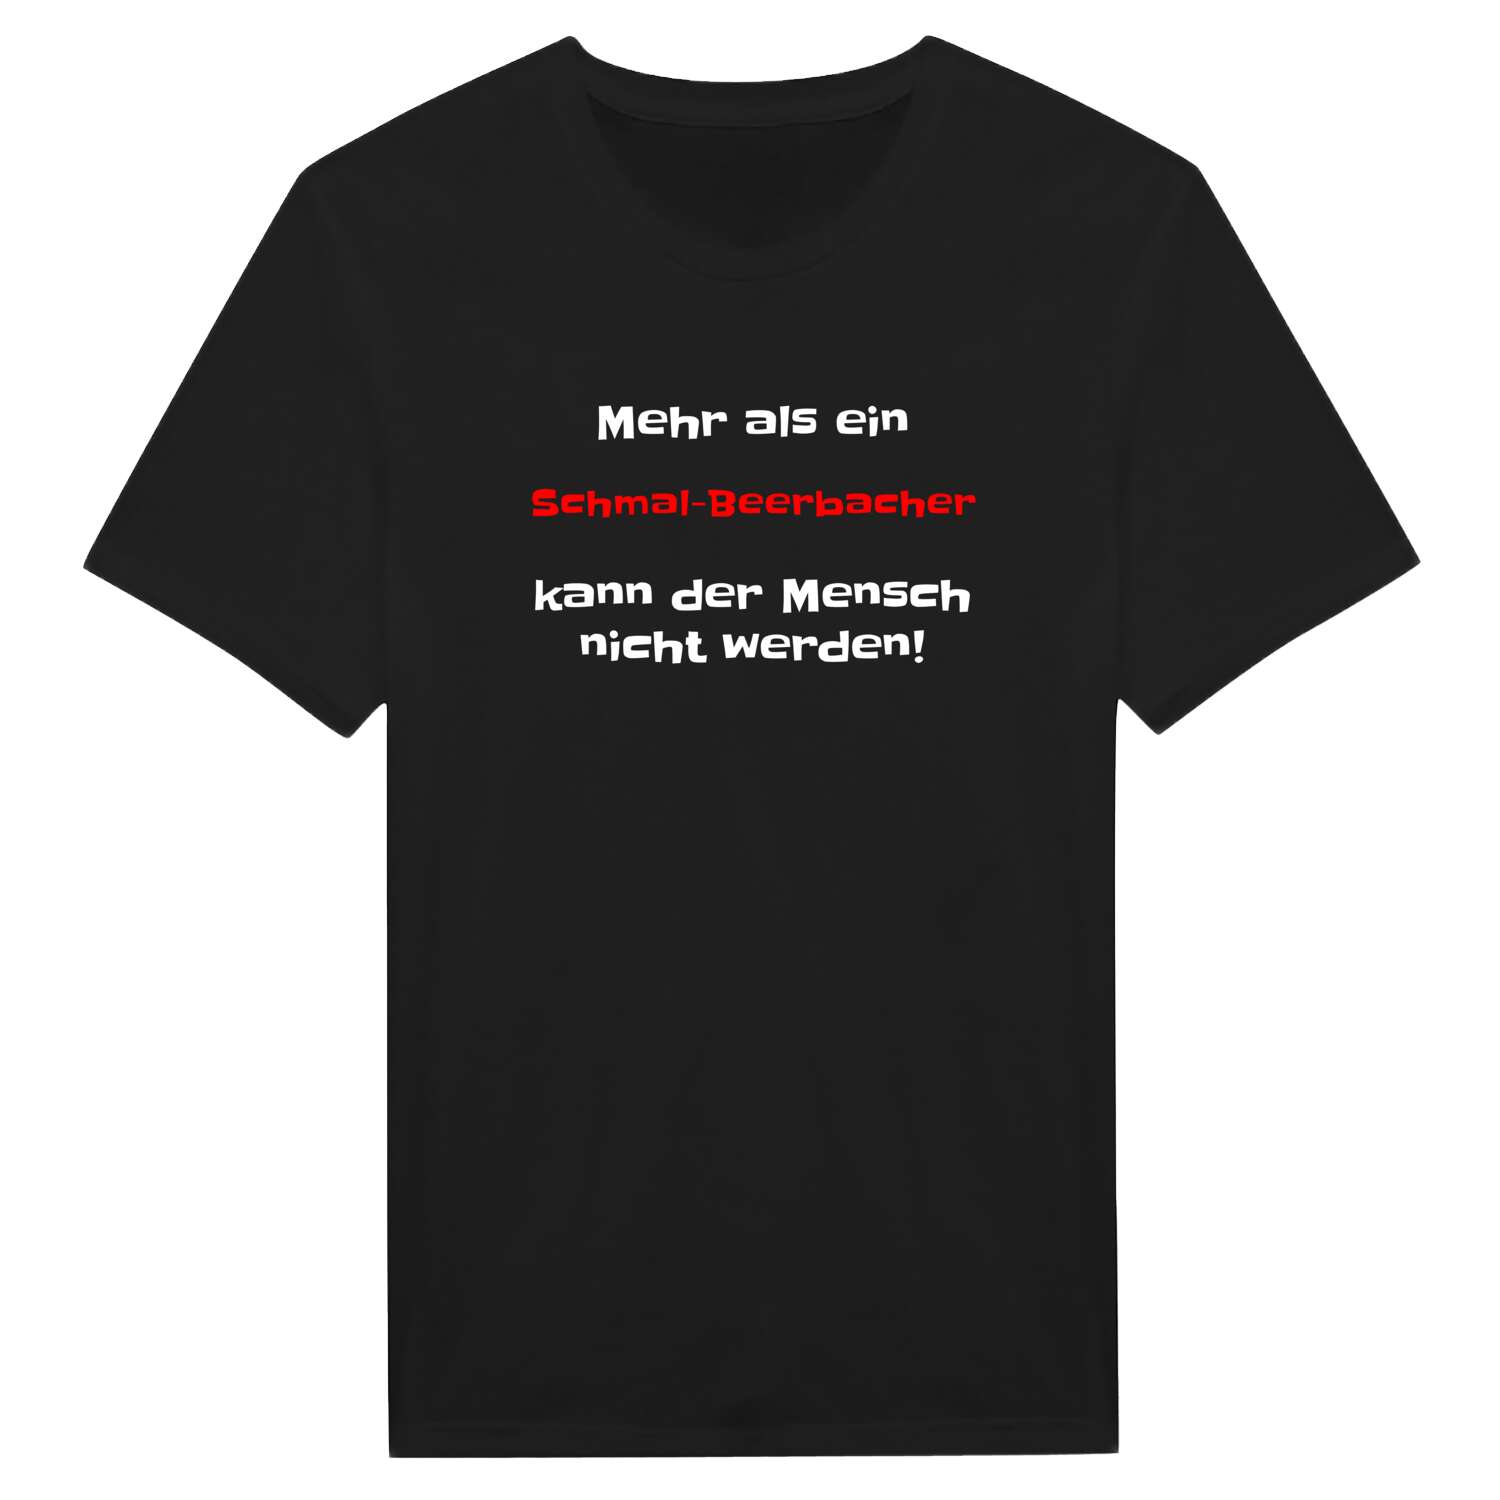 Schmal-Beerbach T-Shirt »Mehr als ein«